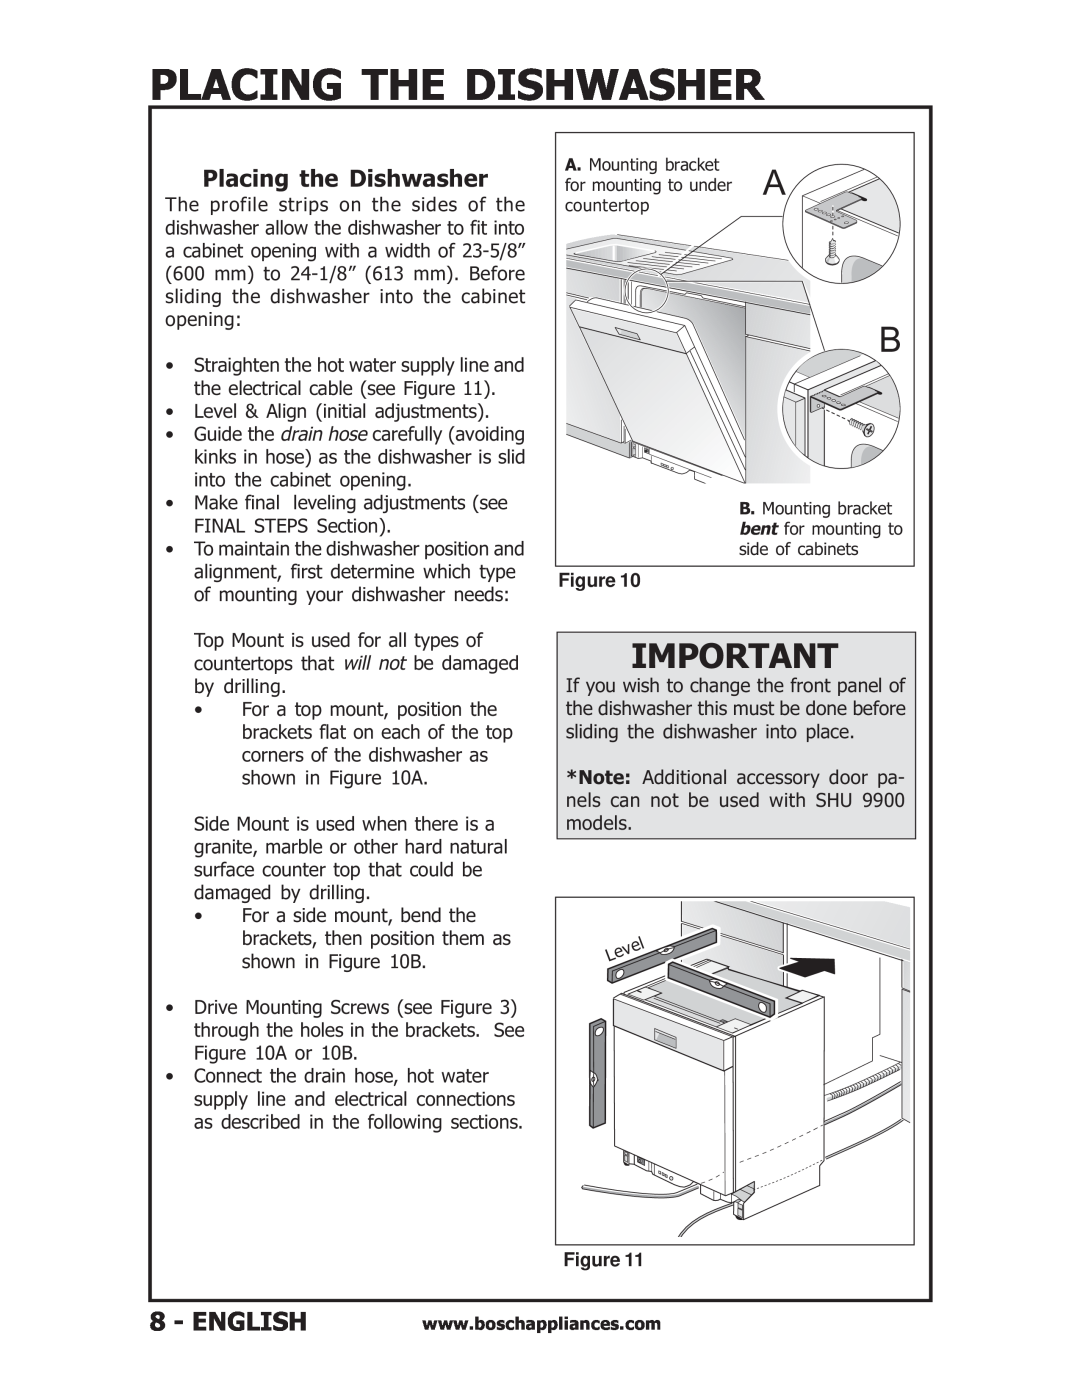 Bosch Appliances SHU53, SHU6E, SHU43E, SHV56A installation instructions Placing The Dishwasher, Figure 